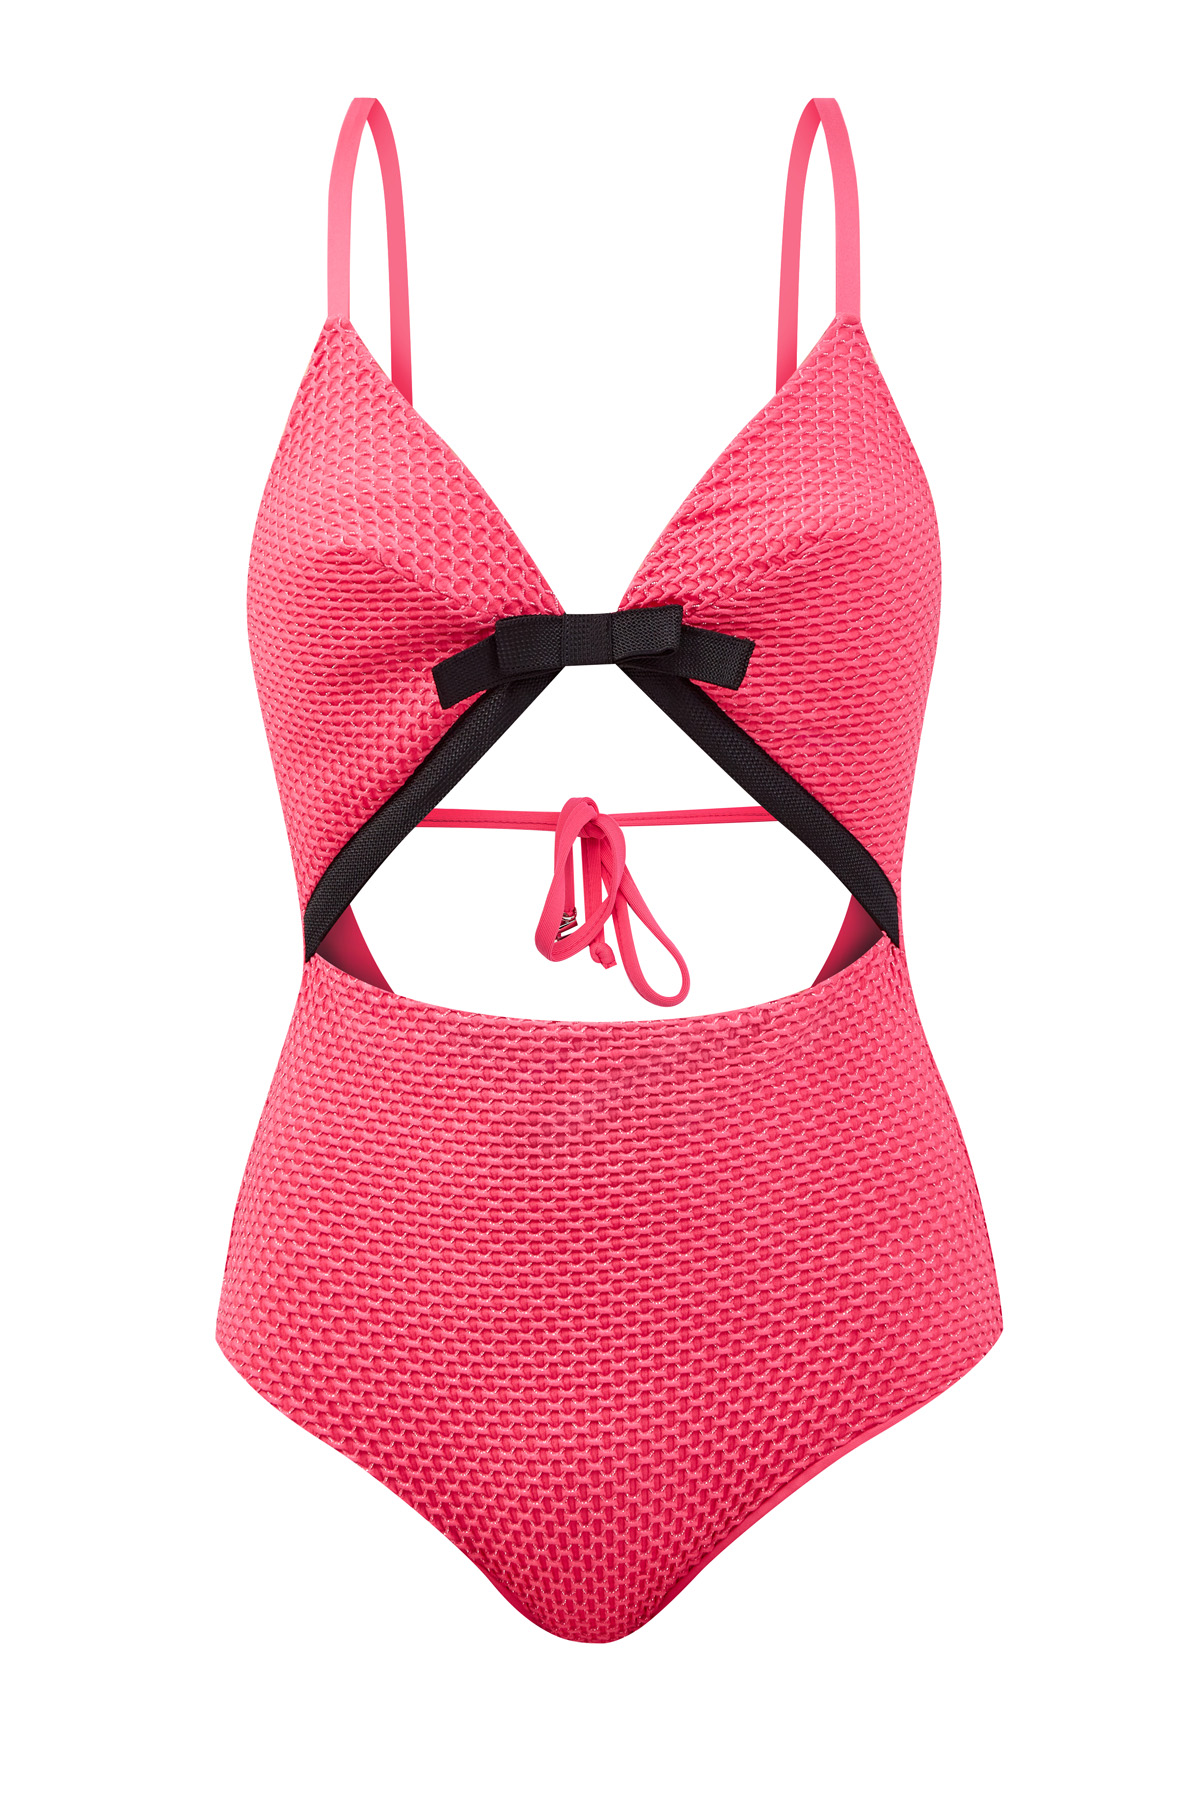 Пляжная одежда  Интермода Яркий слитный купальник с V-образным вырезом и контрастной отделкой